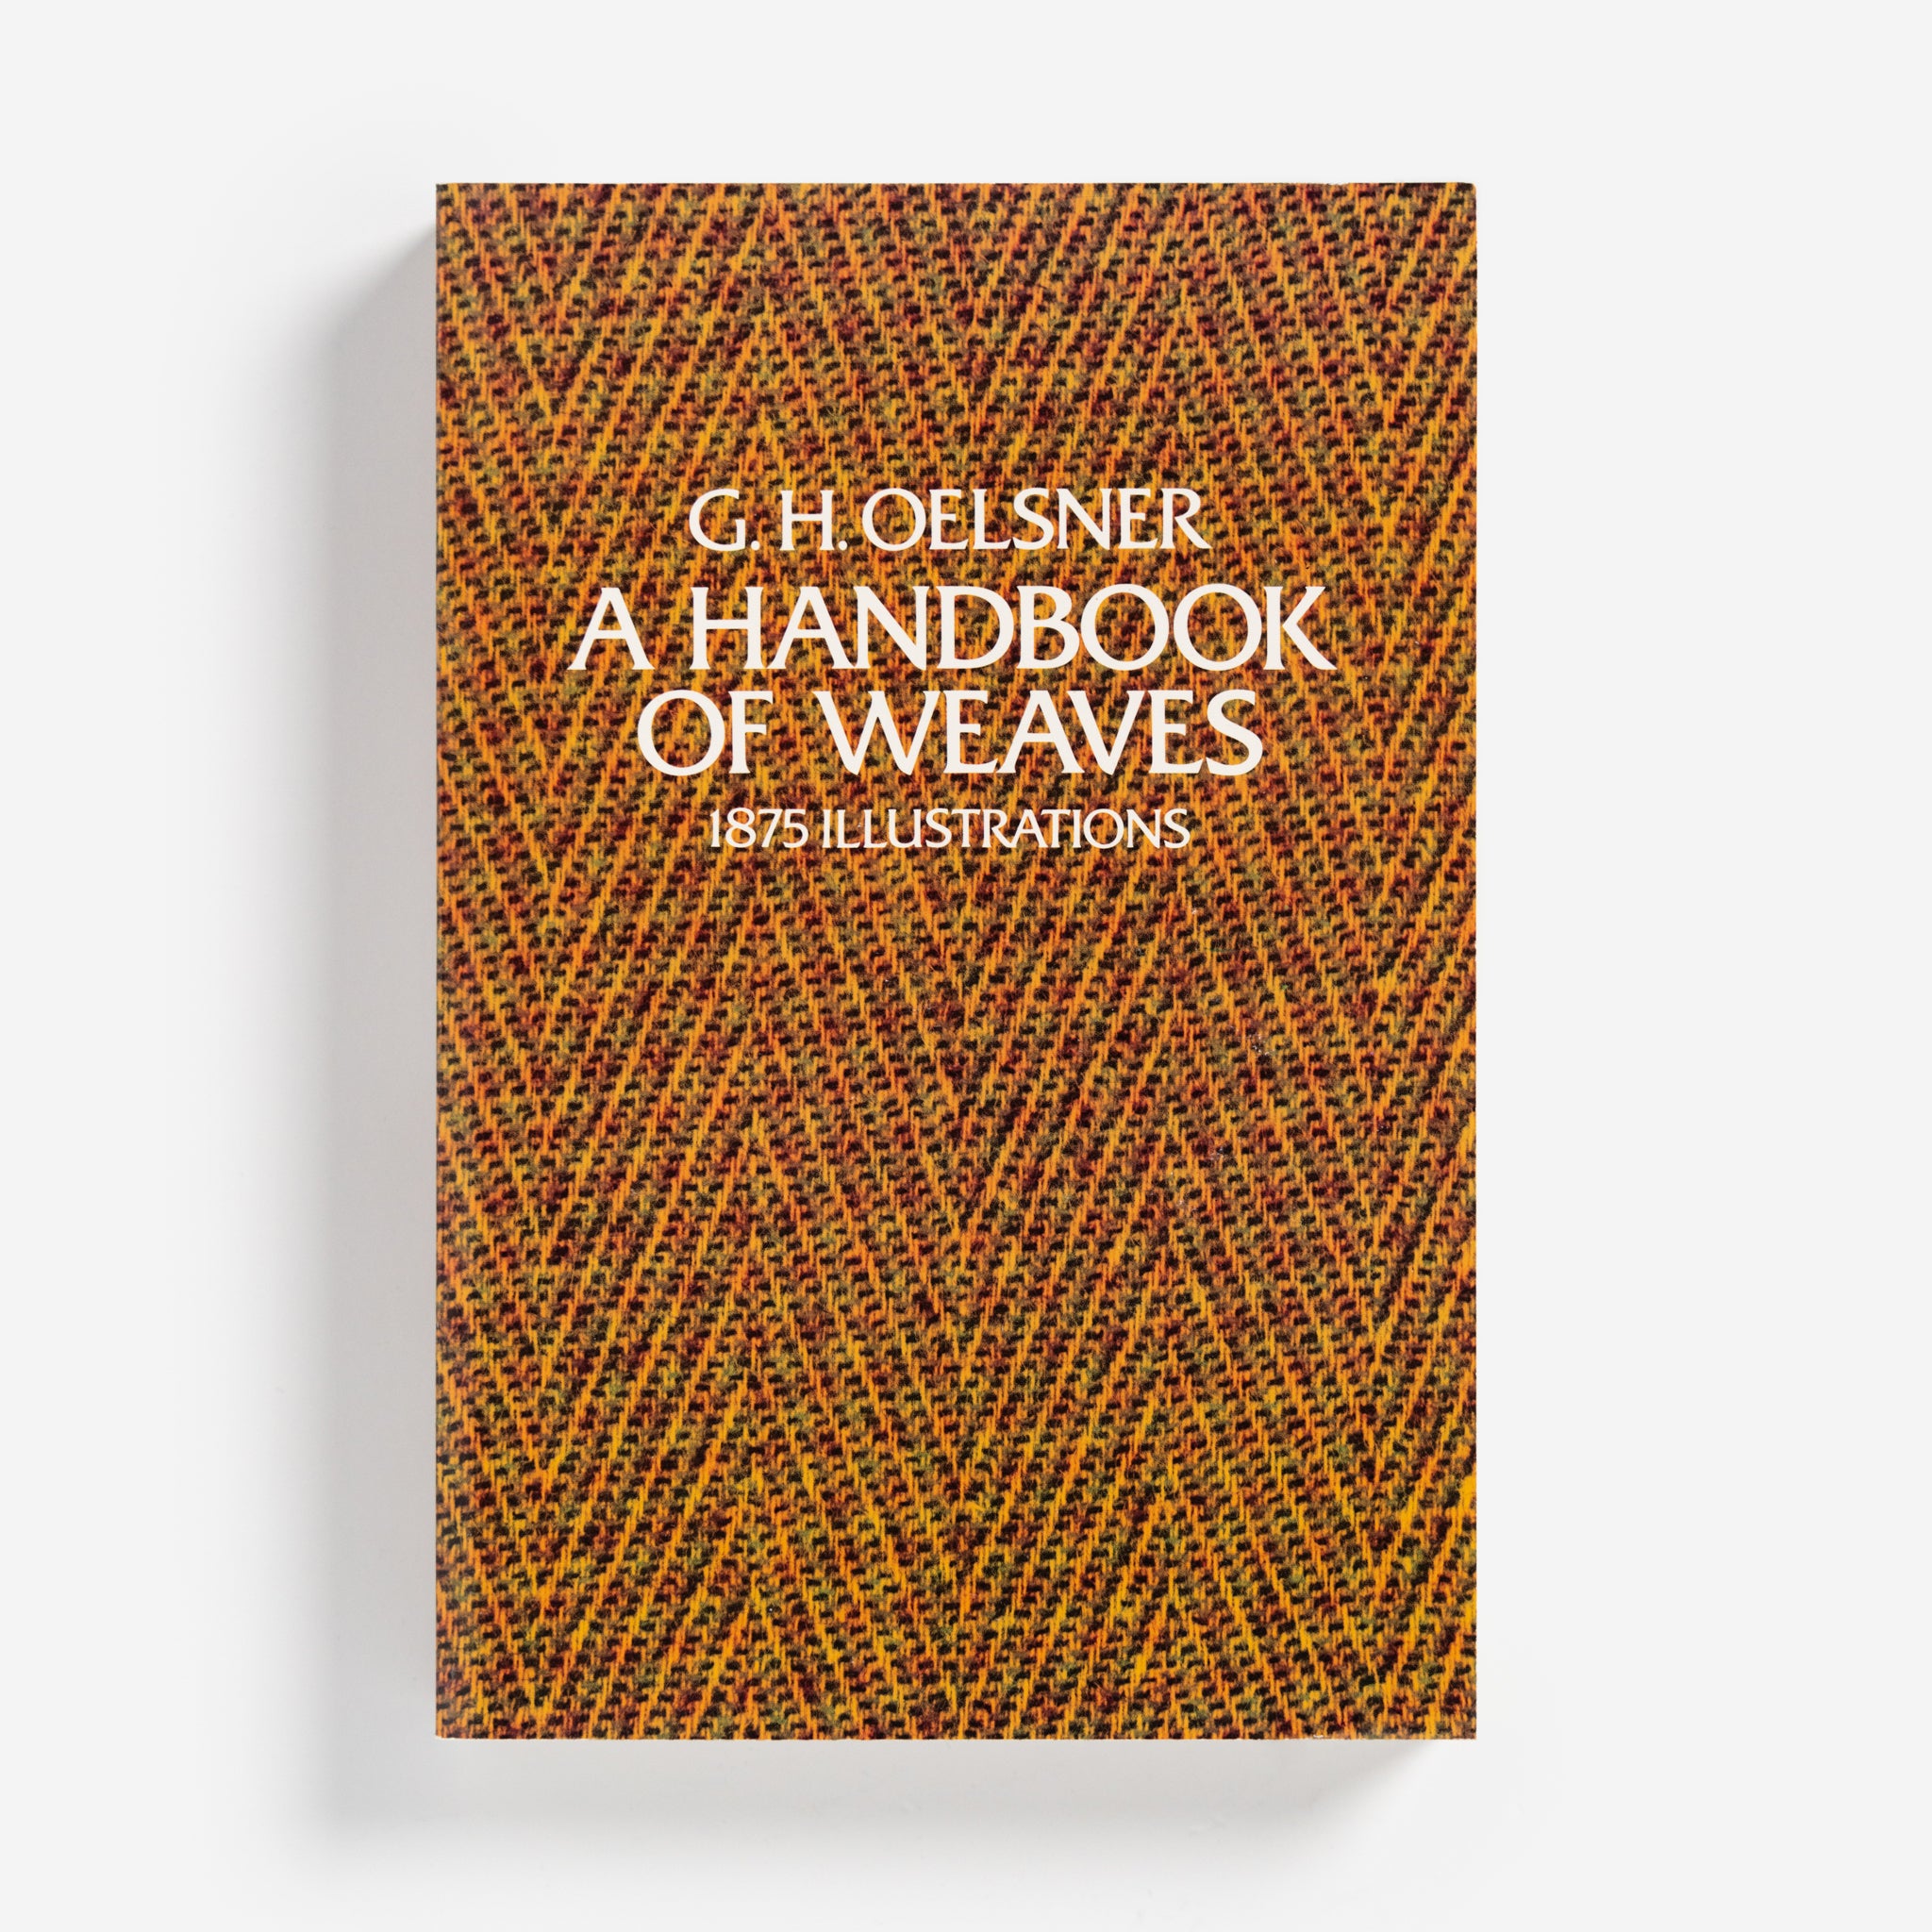 A Handbook of Weaves by G.H. Oelsner